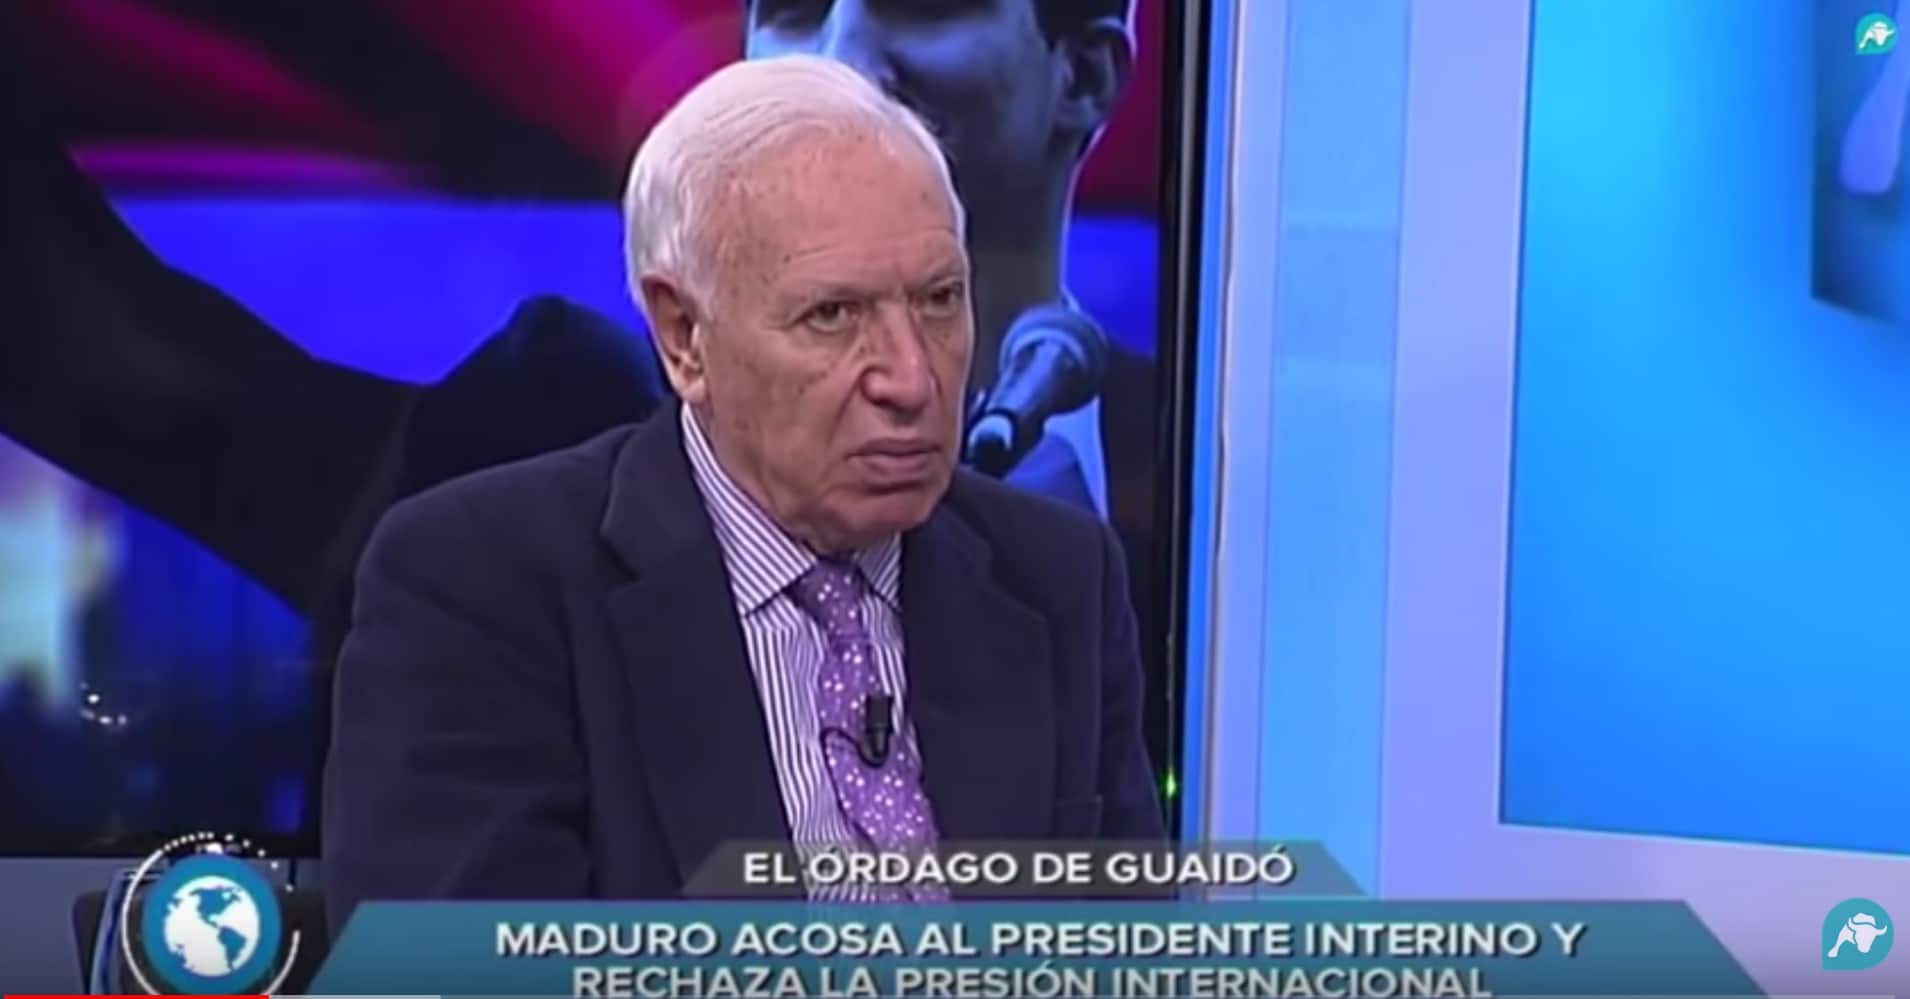 Margallo confía en que el ejército de Venezuela no dispare contra el pueblo